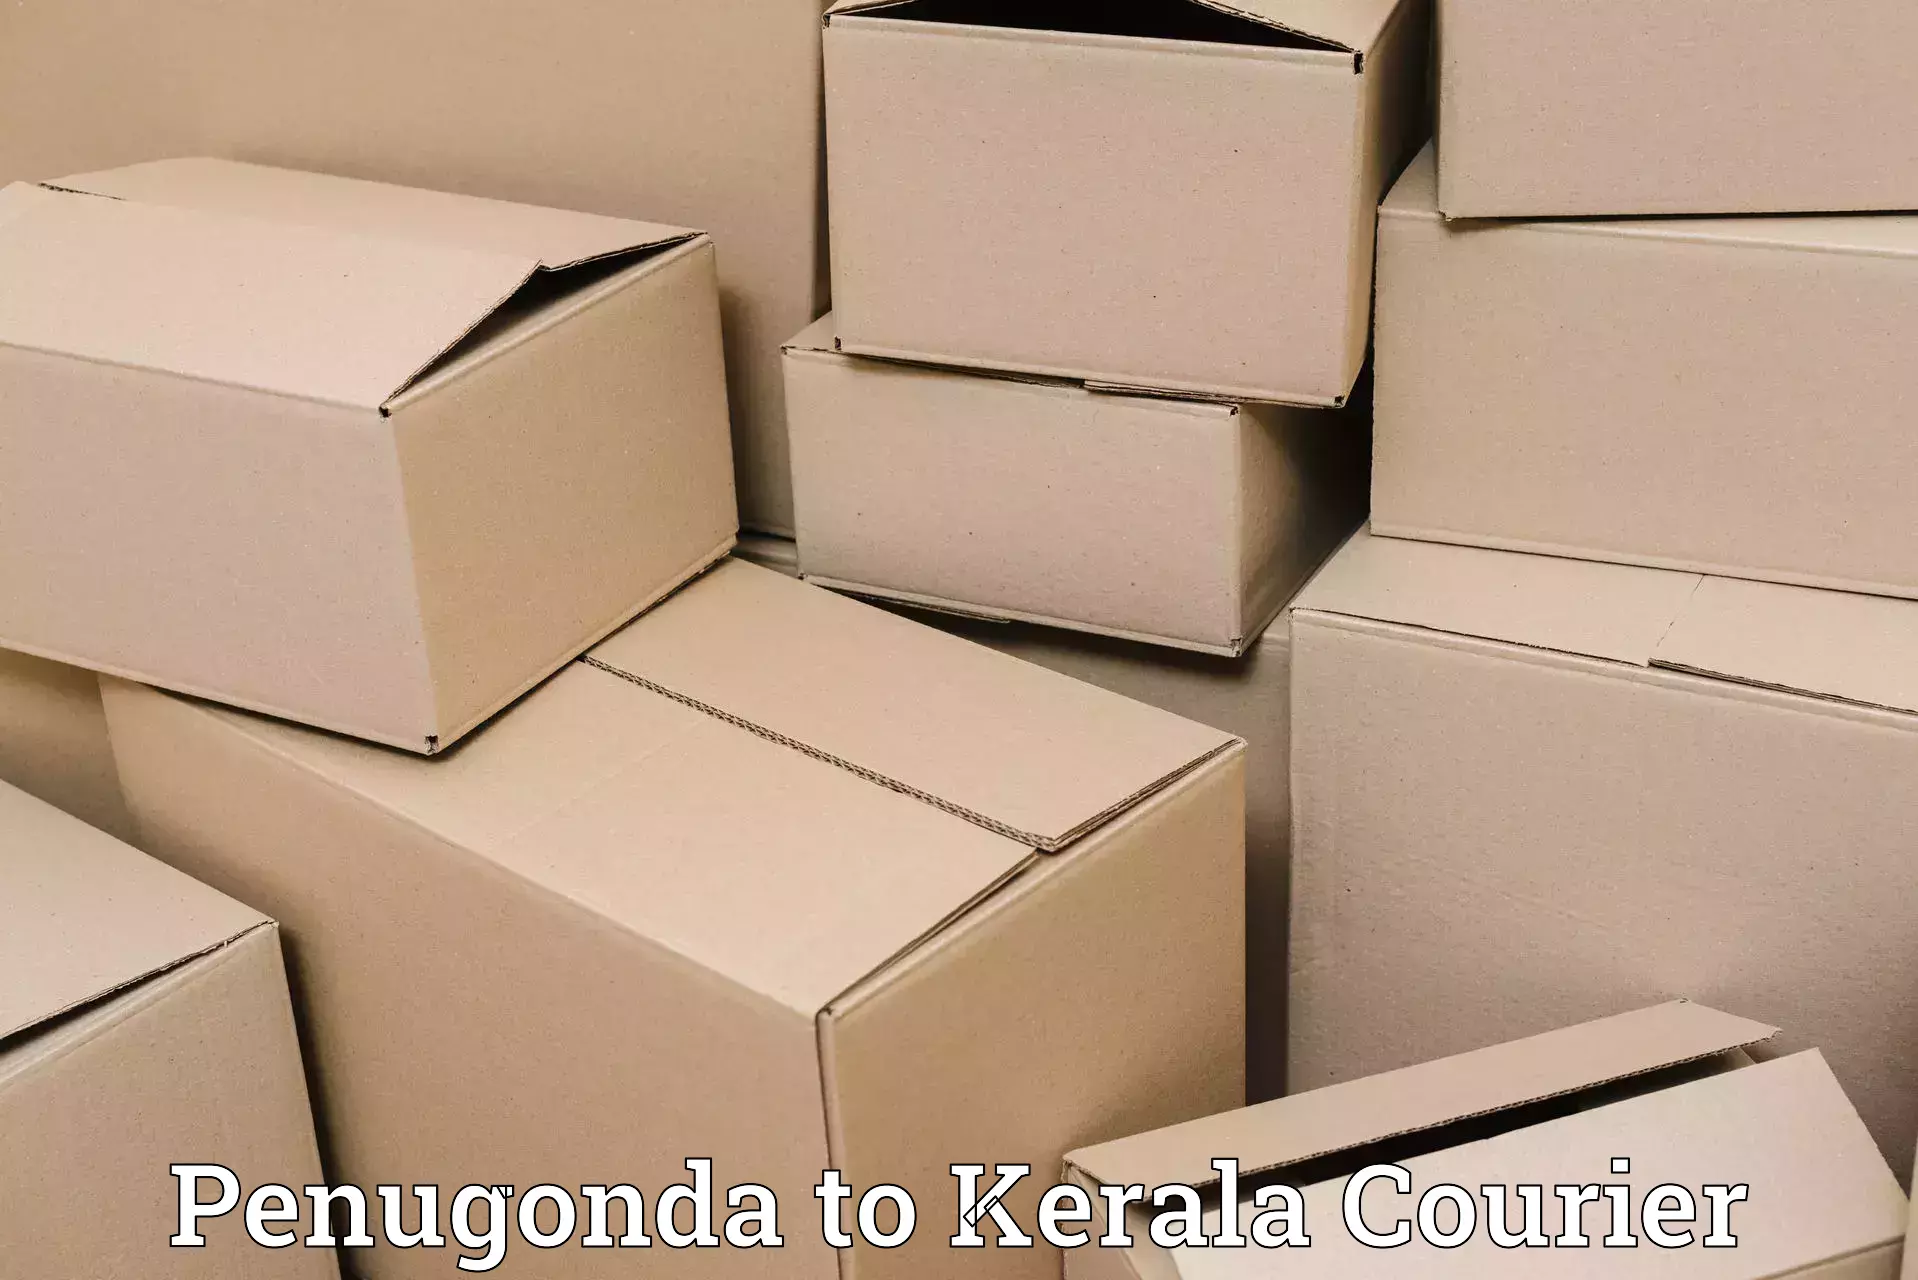 Customized delivery options Penugonda to Mahatma Gandhi University Kottayam